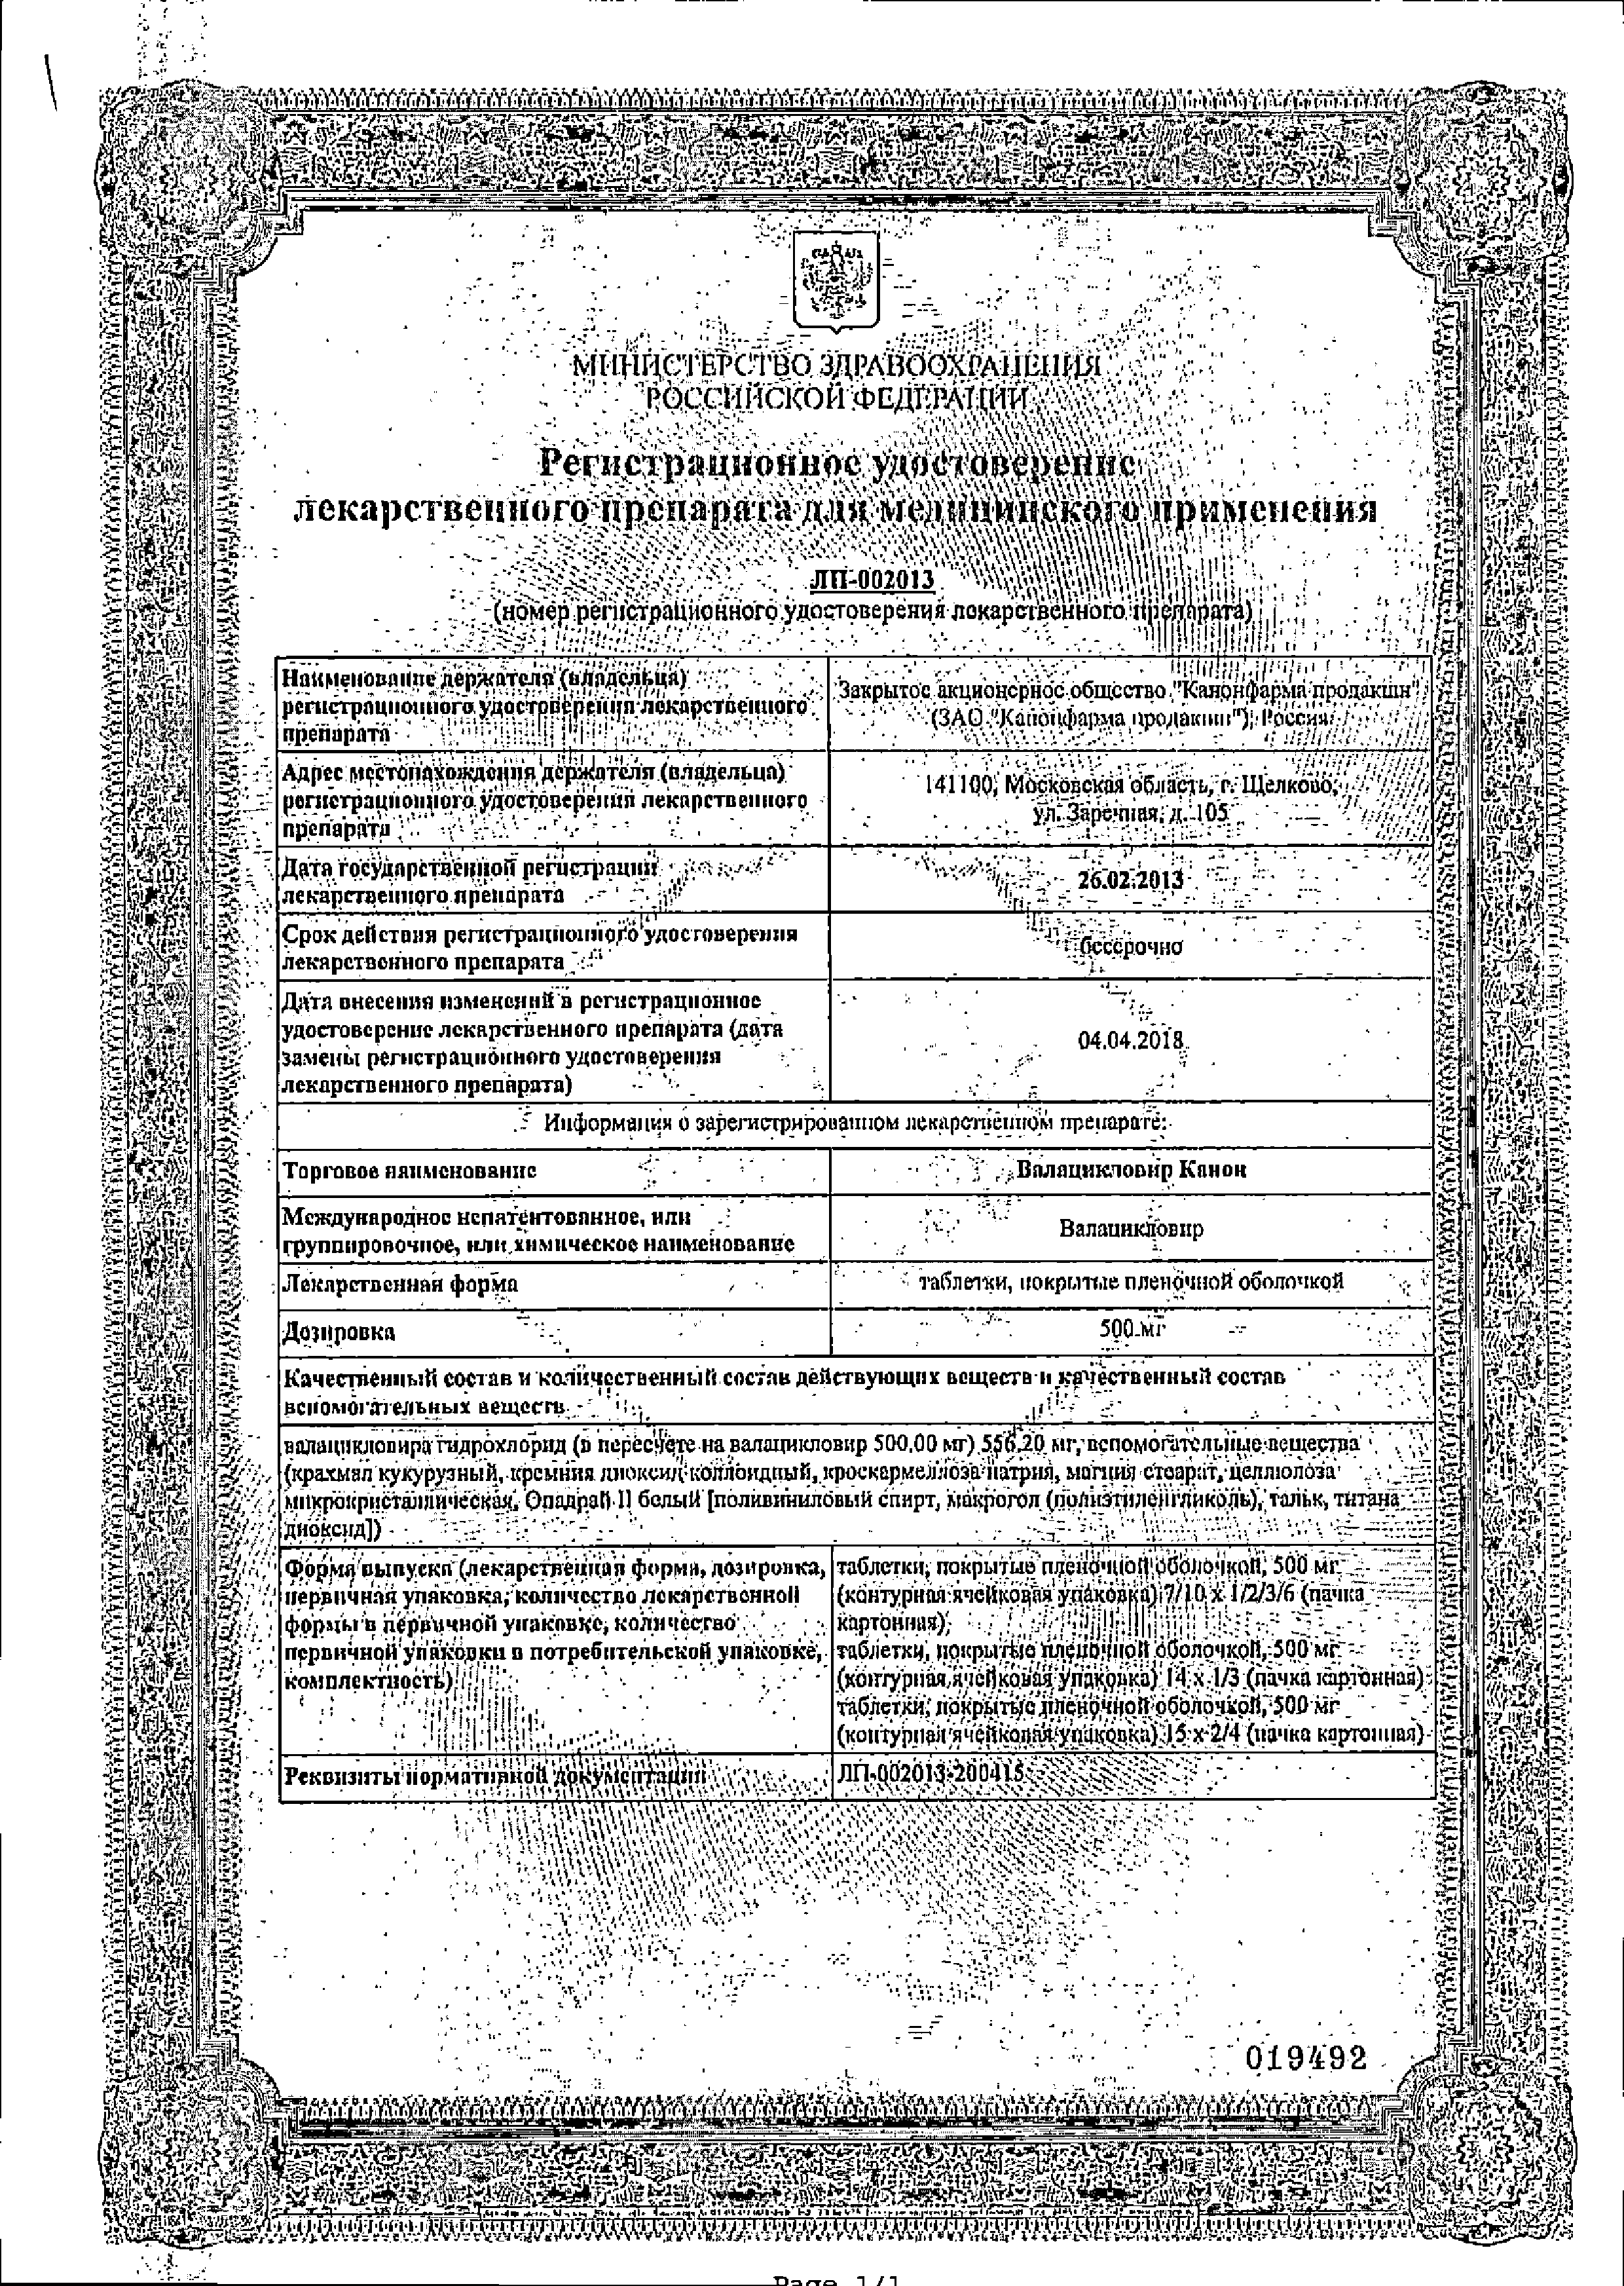 Валацикловир Канон сертификат